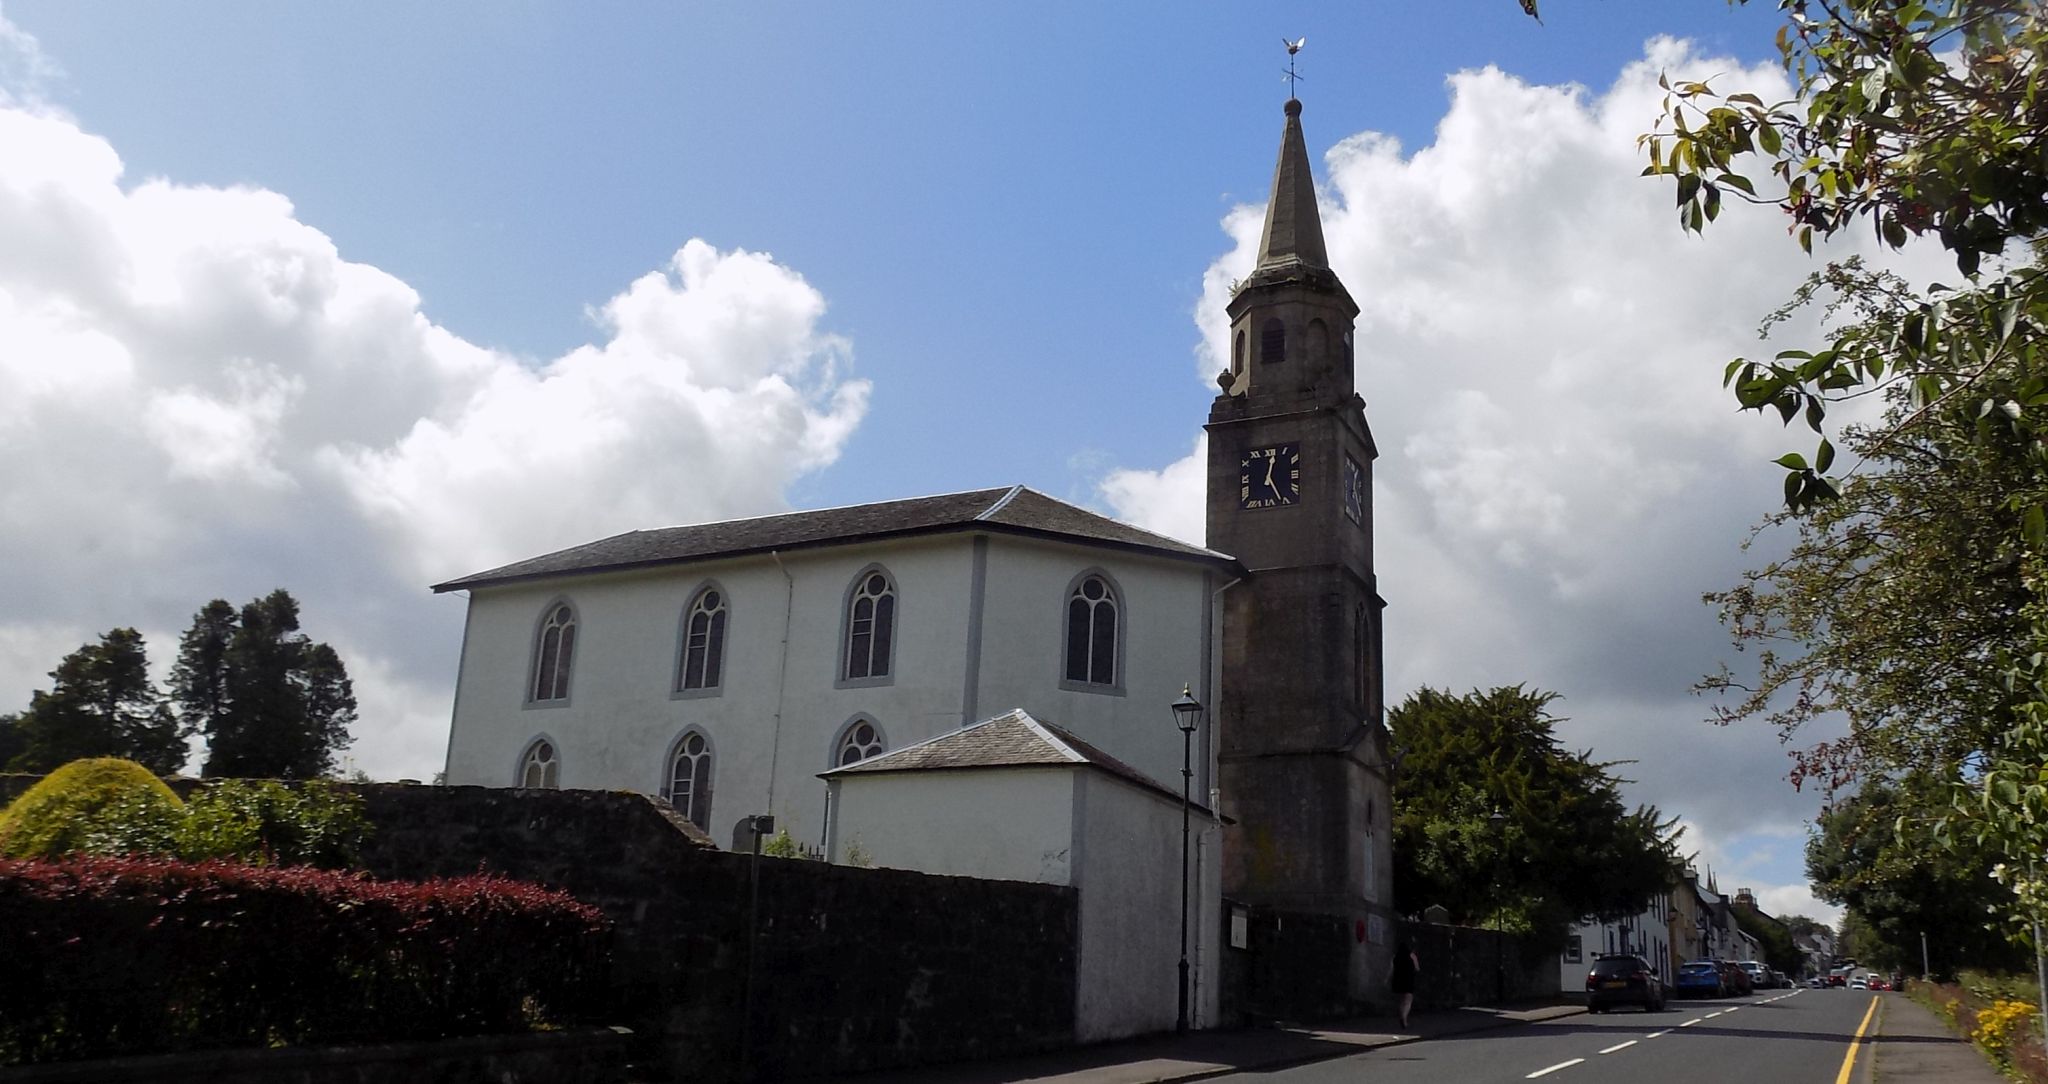 Parish Church in Eaglesham